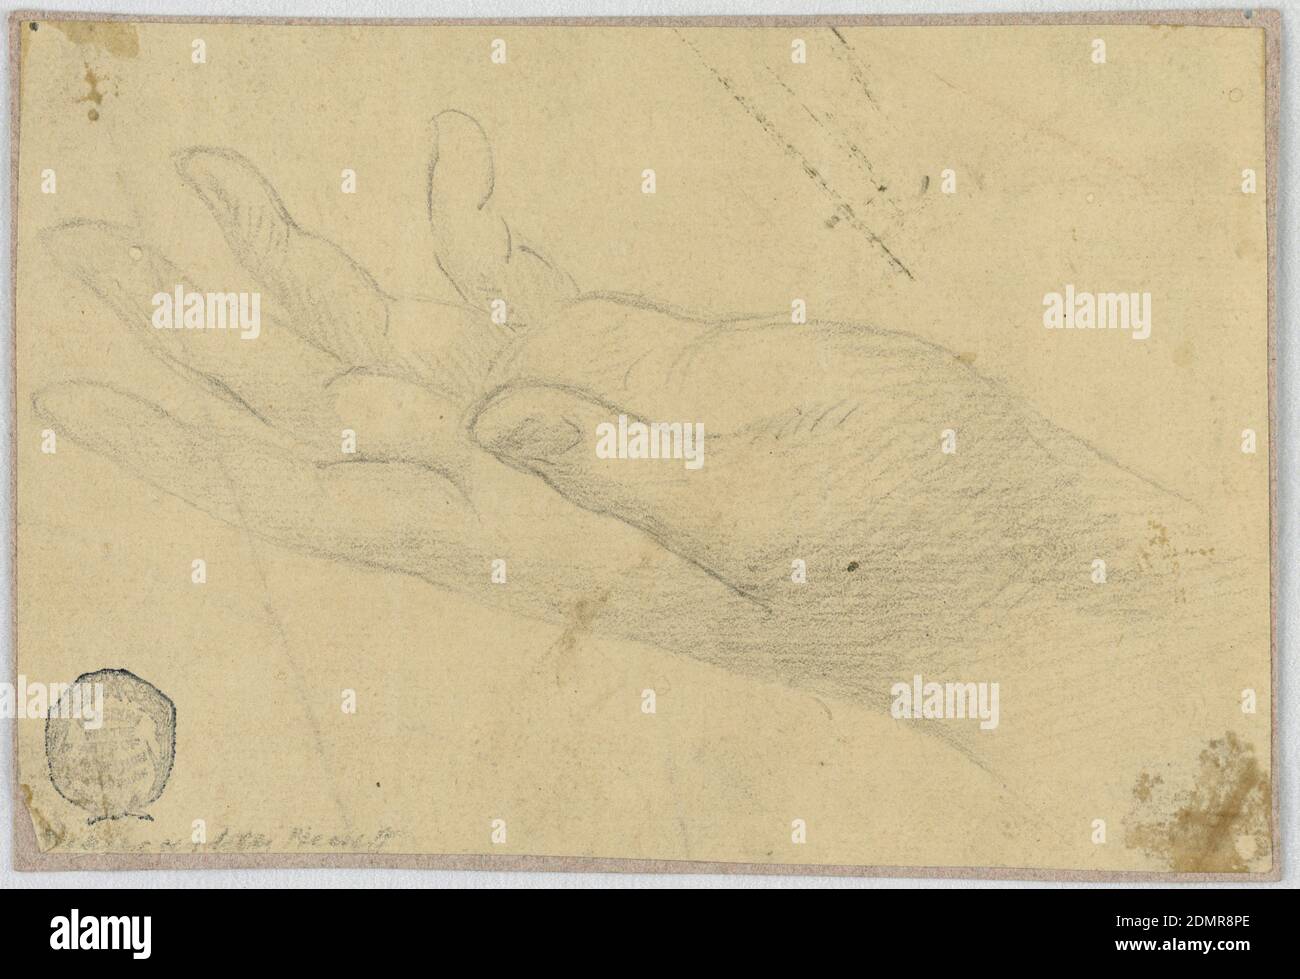 Studio: Mano sinistra, matita su carta marrone, composizione orizzontale di una mano sinistra estesa che riceve qualcosa., Italia, 1750–1800, figure, disegno Foto Stock